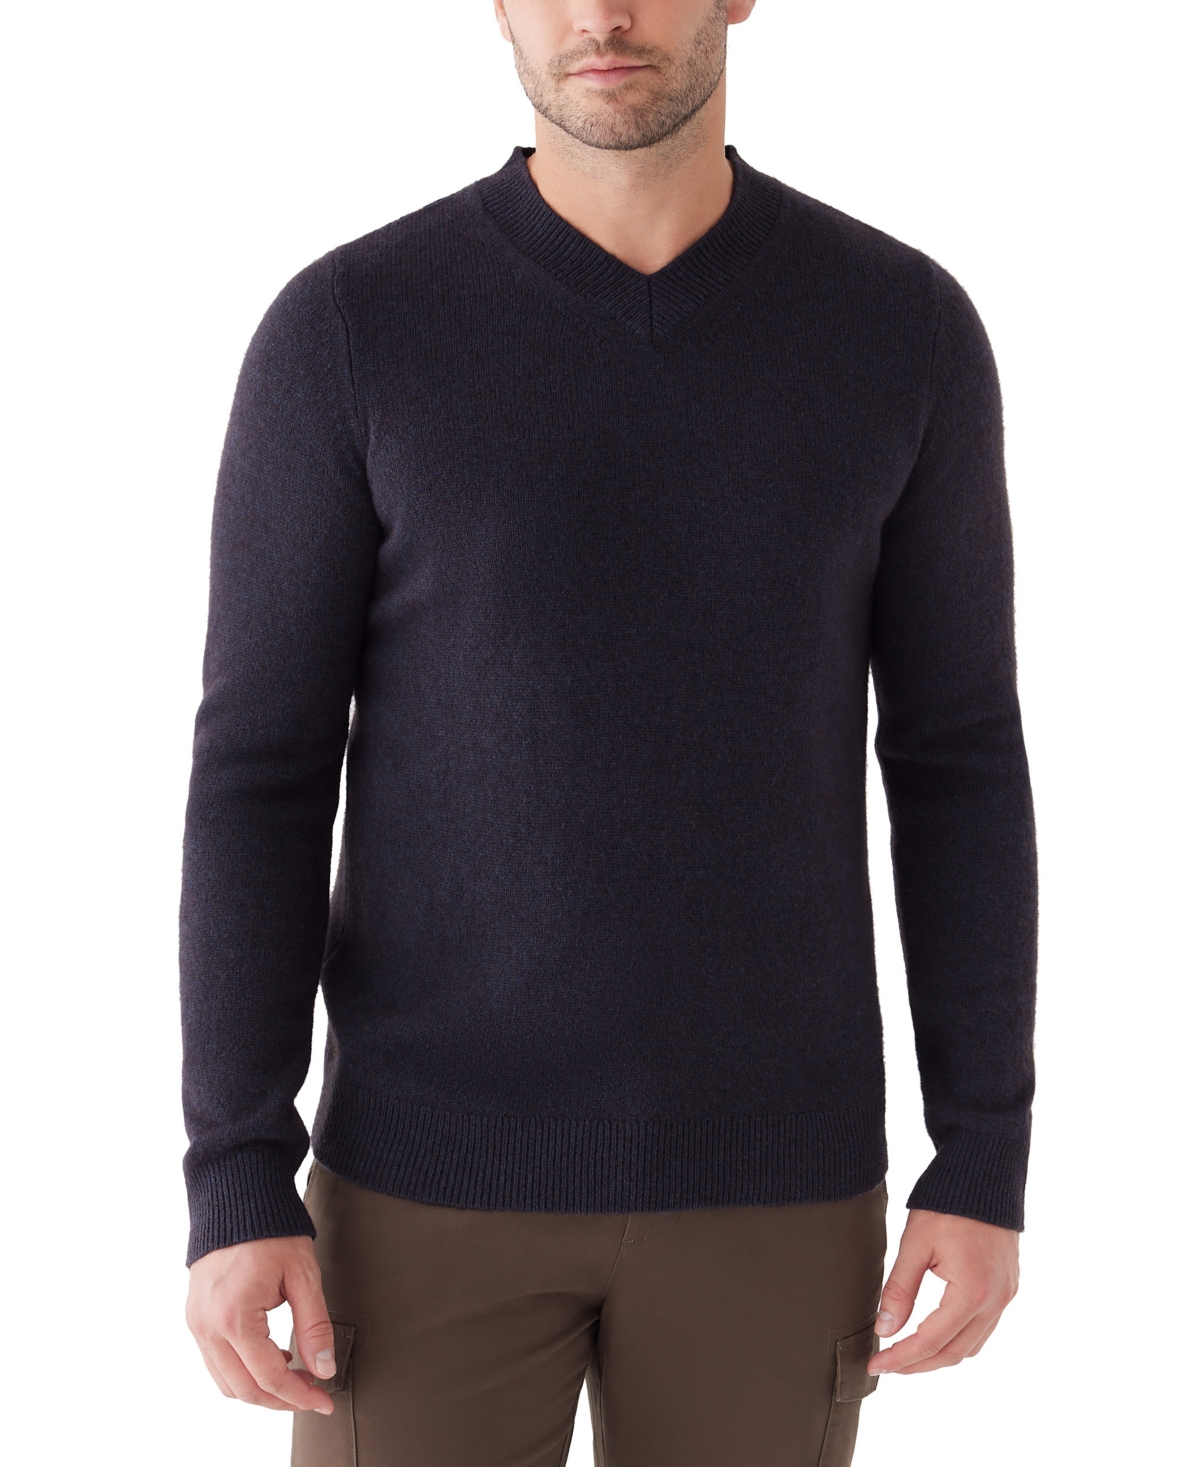 Men's V-Neck Wool Sweater - Navy